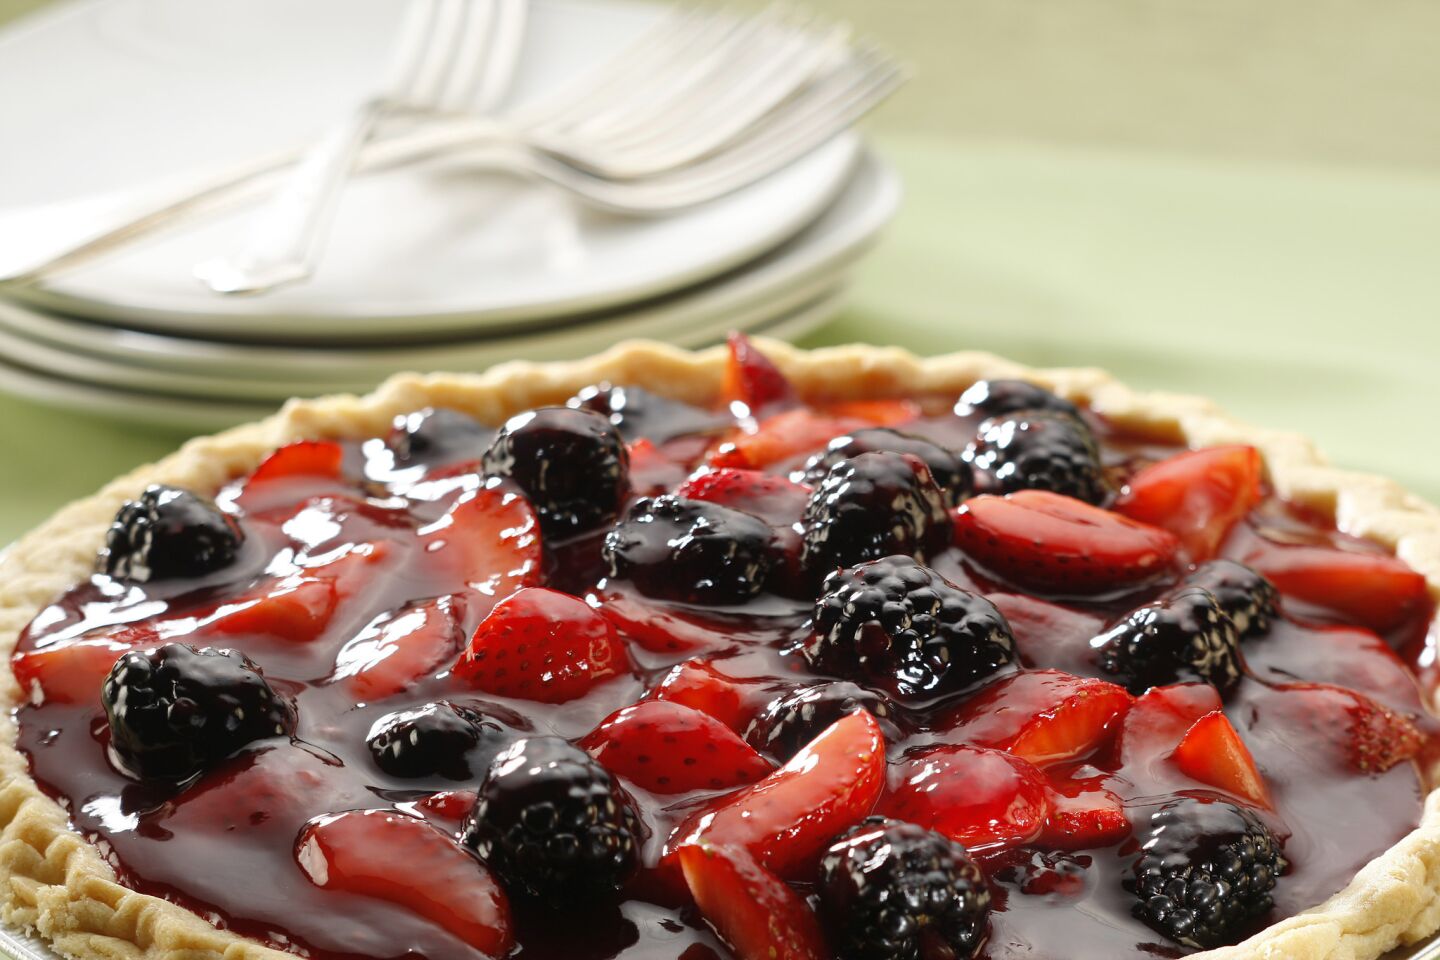 Boysenberry-strawberry glazed pie